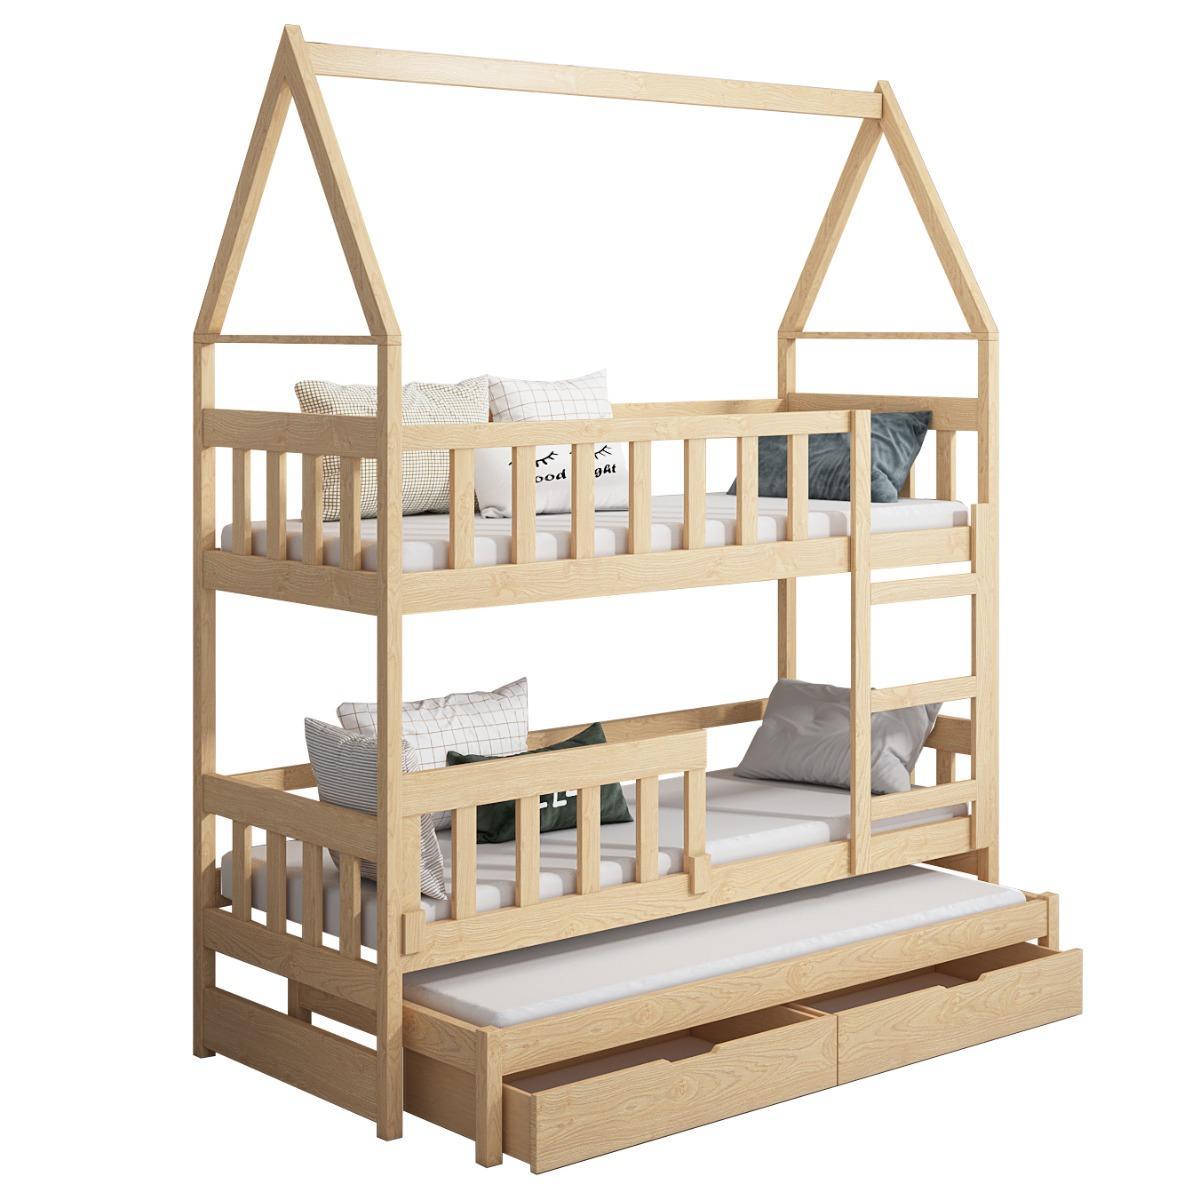 Łóżko piętrowe DOMEK drewno szare miejsce do spania dla 3 osób + materace piankowe 180x75 cm w zestawie do pokoju dziecka 5 Full Screen